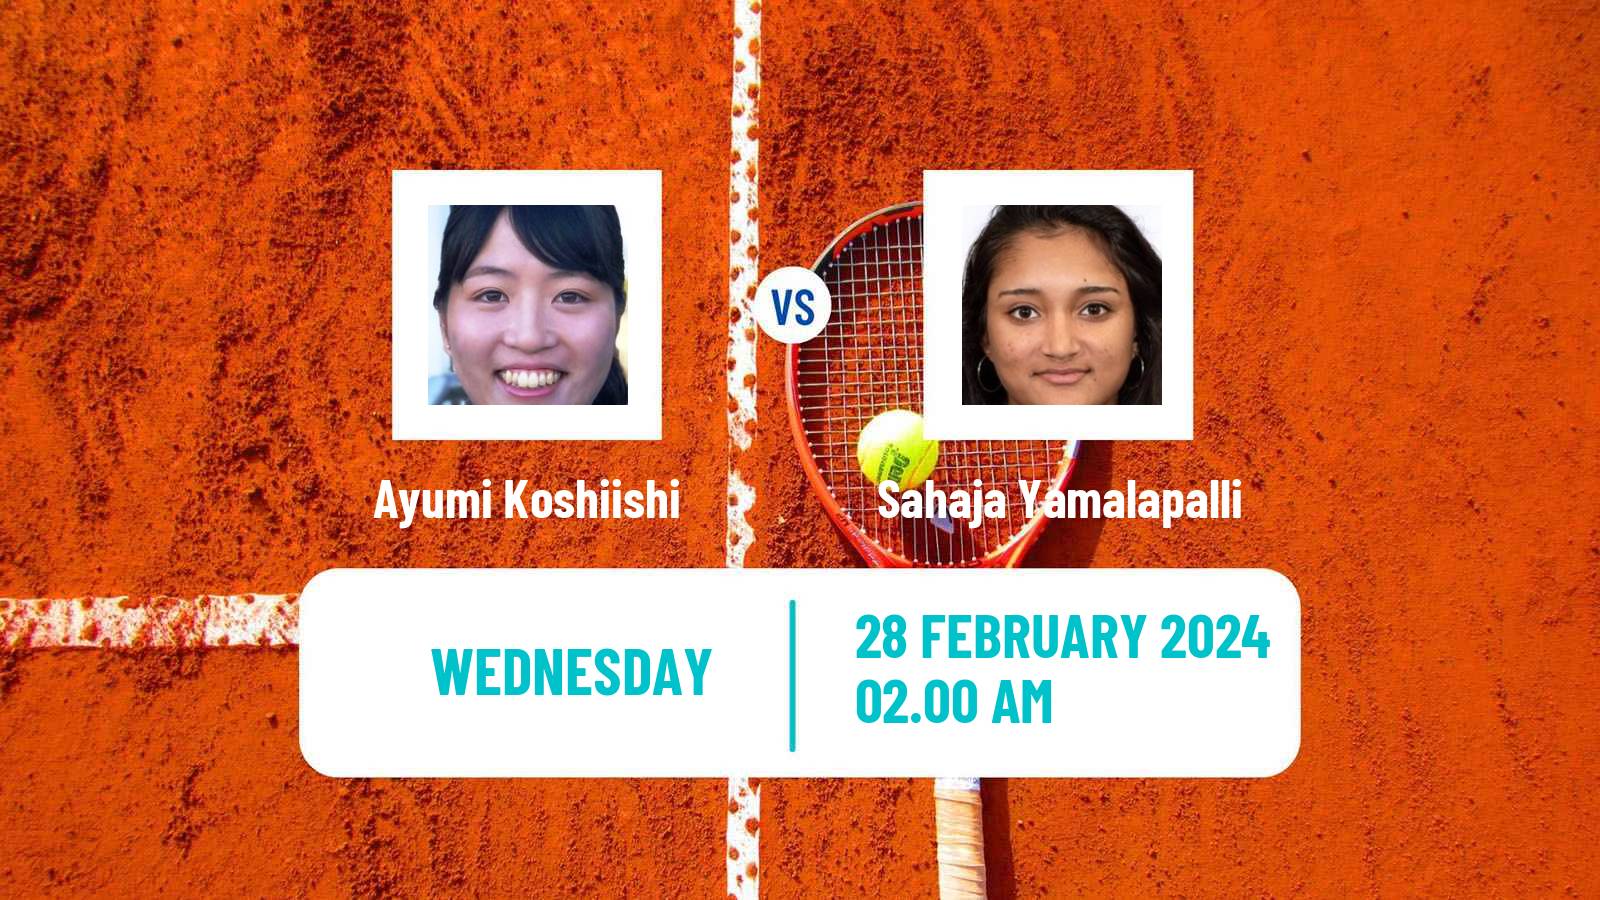 Tennis ITF W35 Gurugram Women Ayumi Koshiishi - Sahaja Yamalapalli